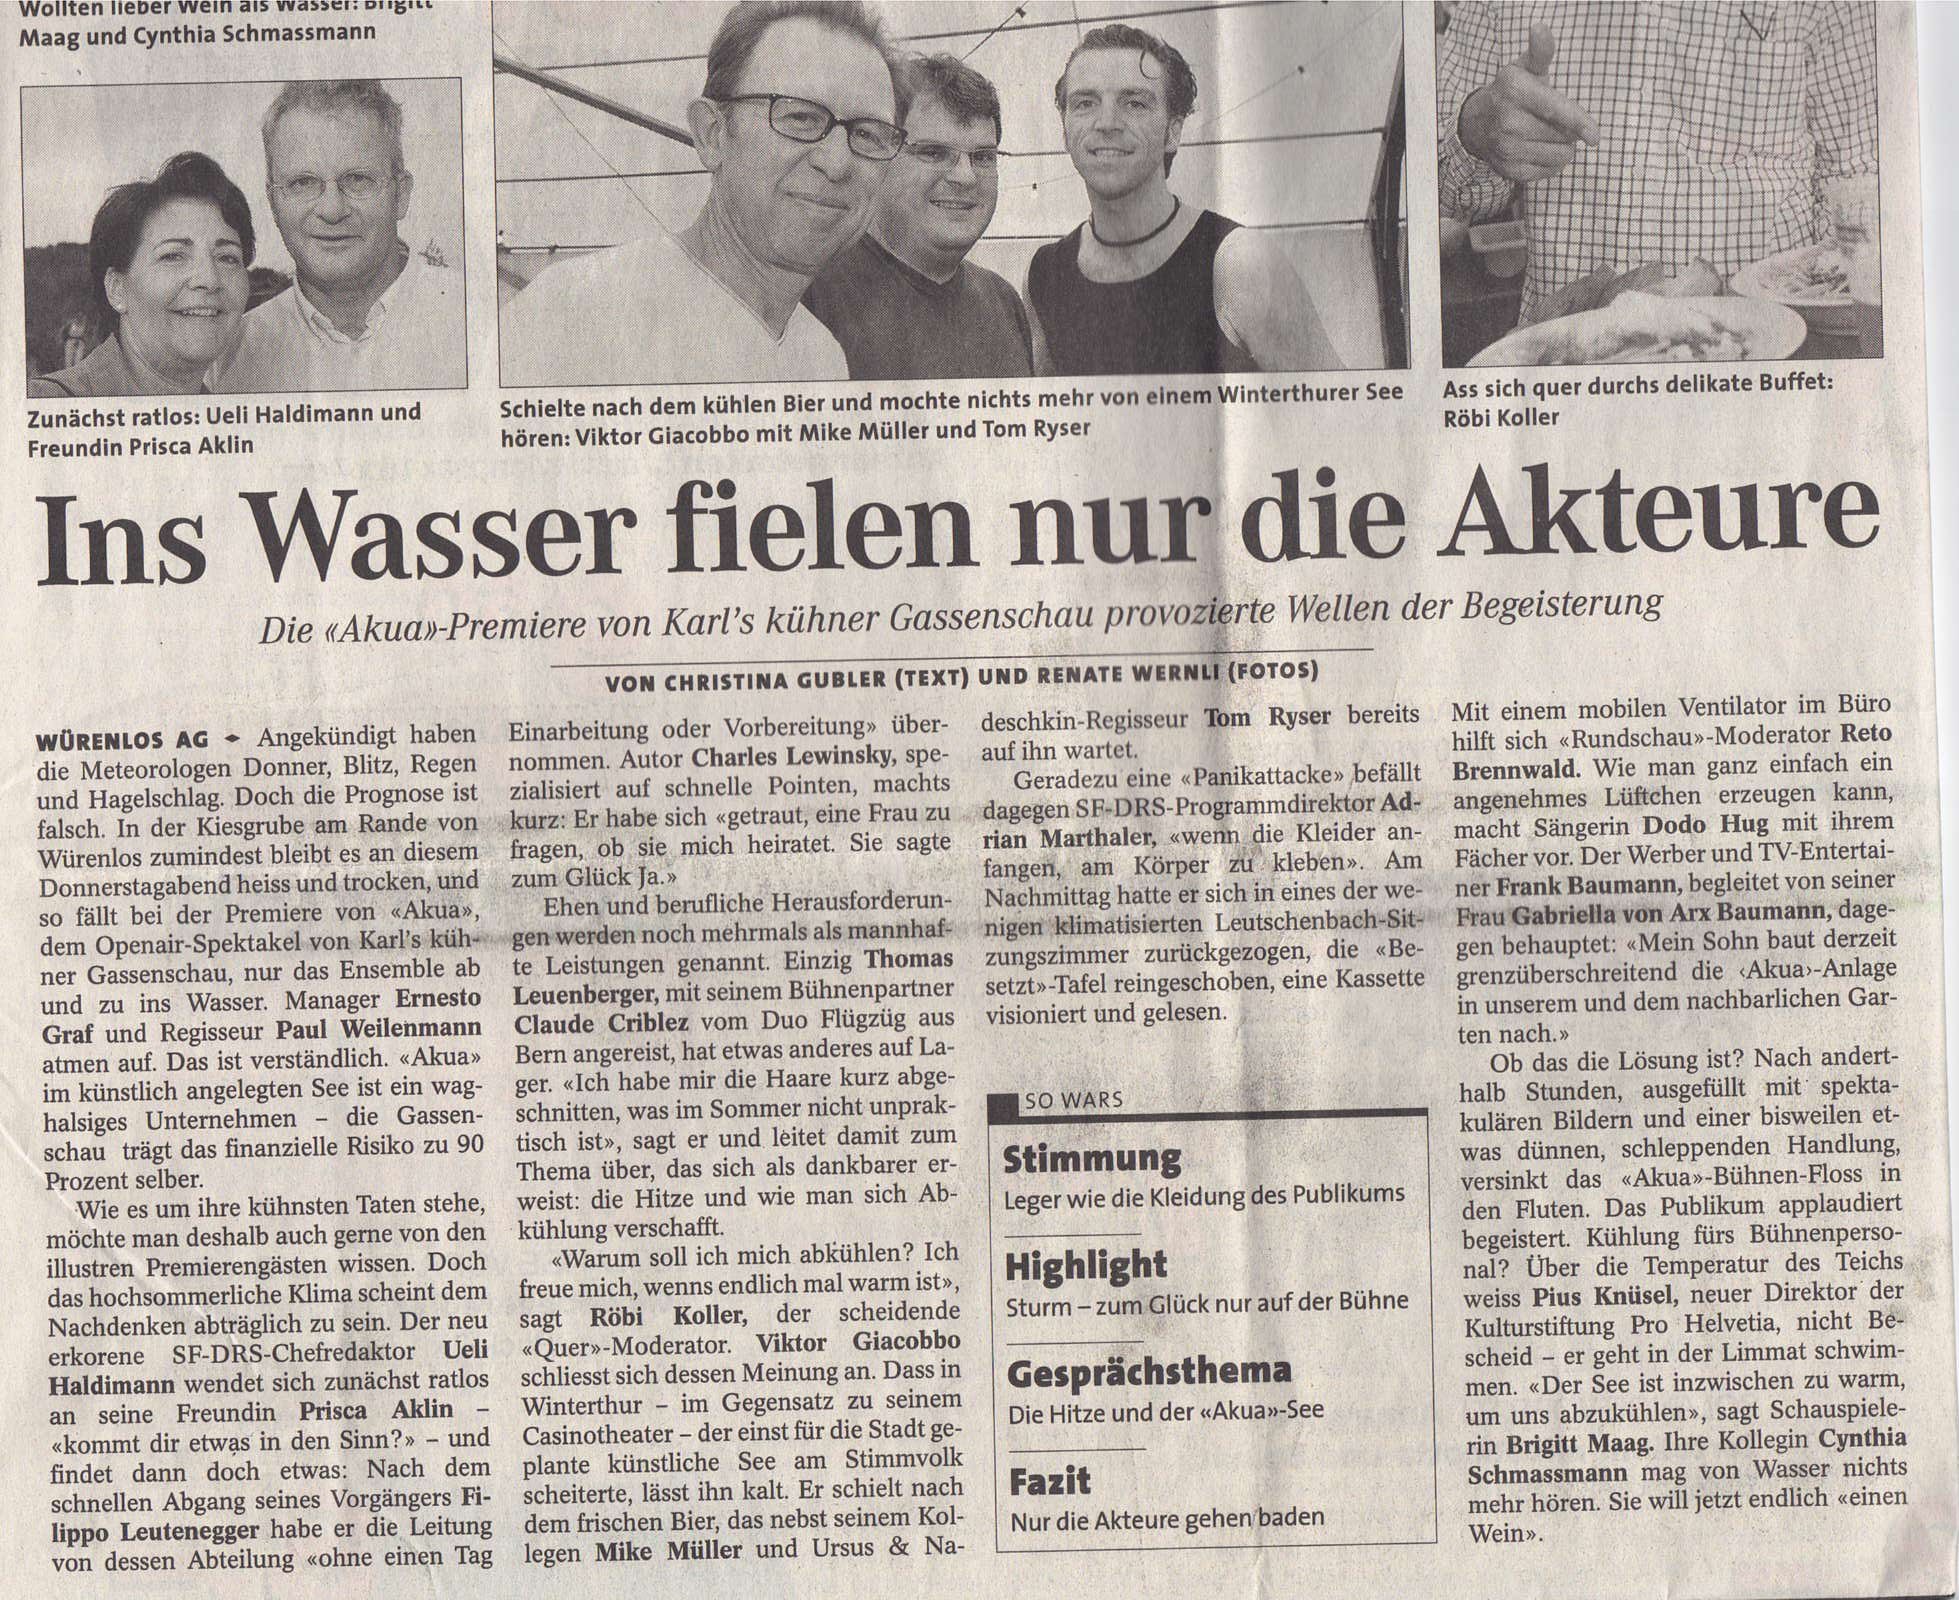 2002, Sonntagszeitung, Ins Wasser fielen nur die Akteure, Premiere Akua, Karl's kühne Gassenschau